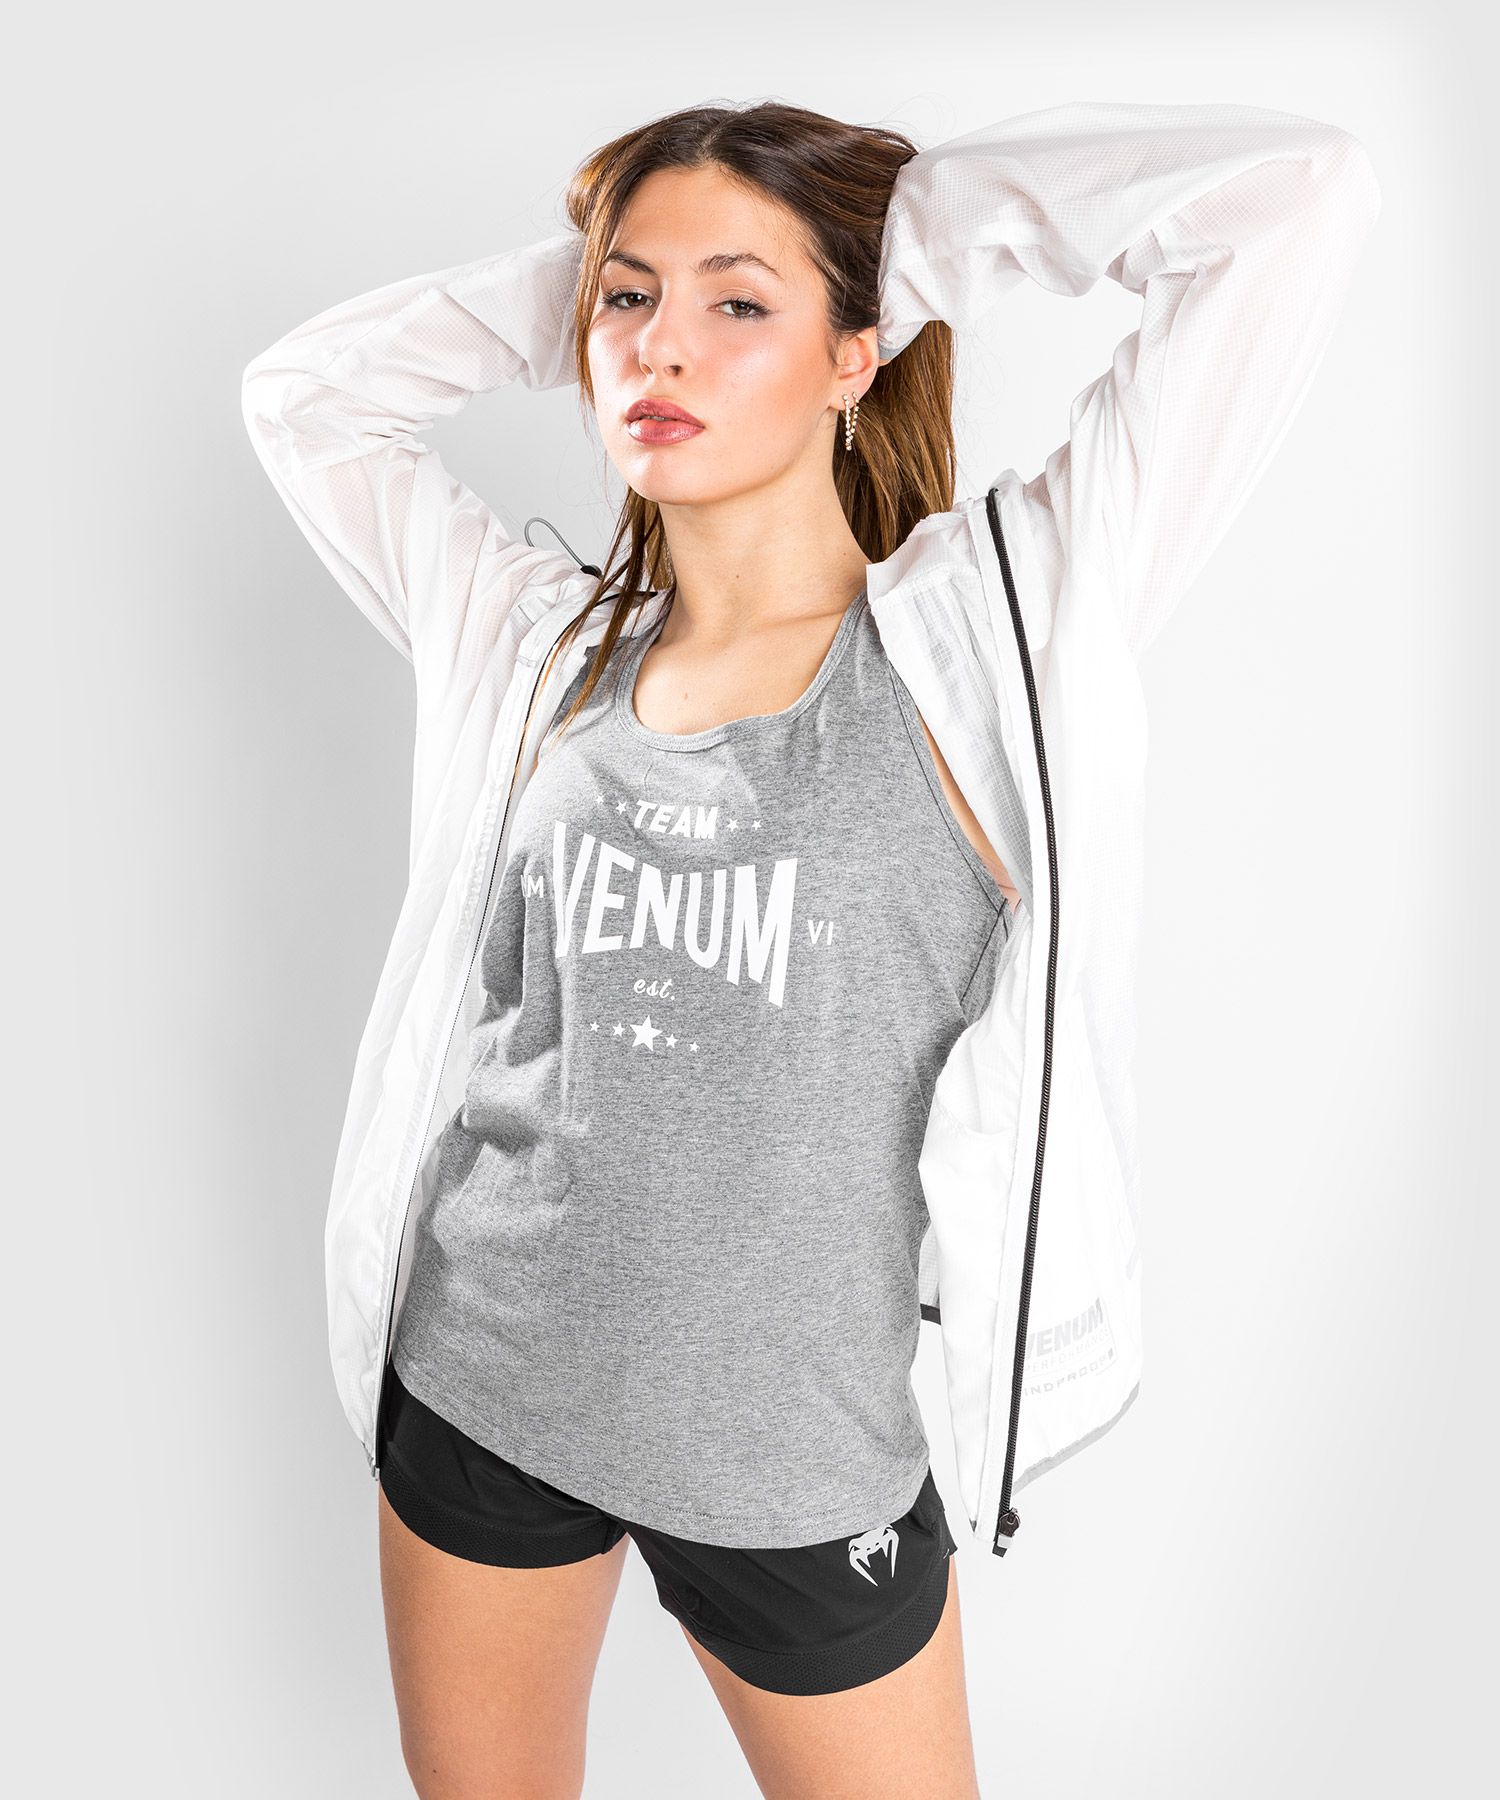 Camiseta de tirantes Venum Team 2.0 - Mujer - Gris Ceniza claro